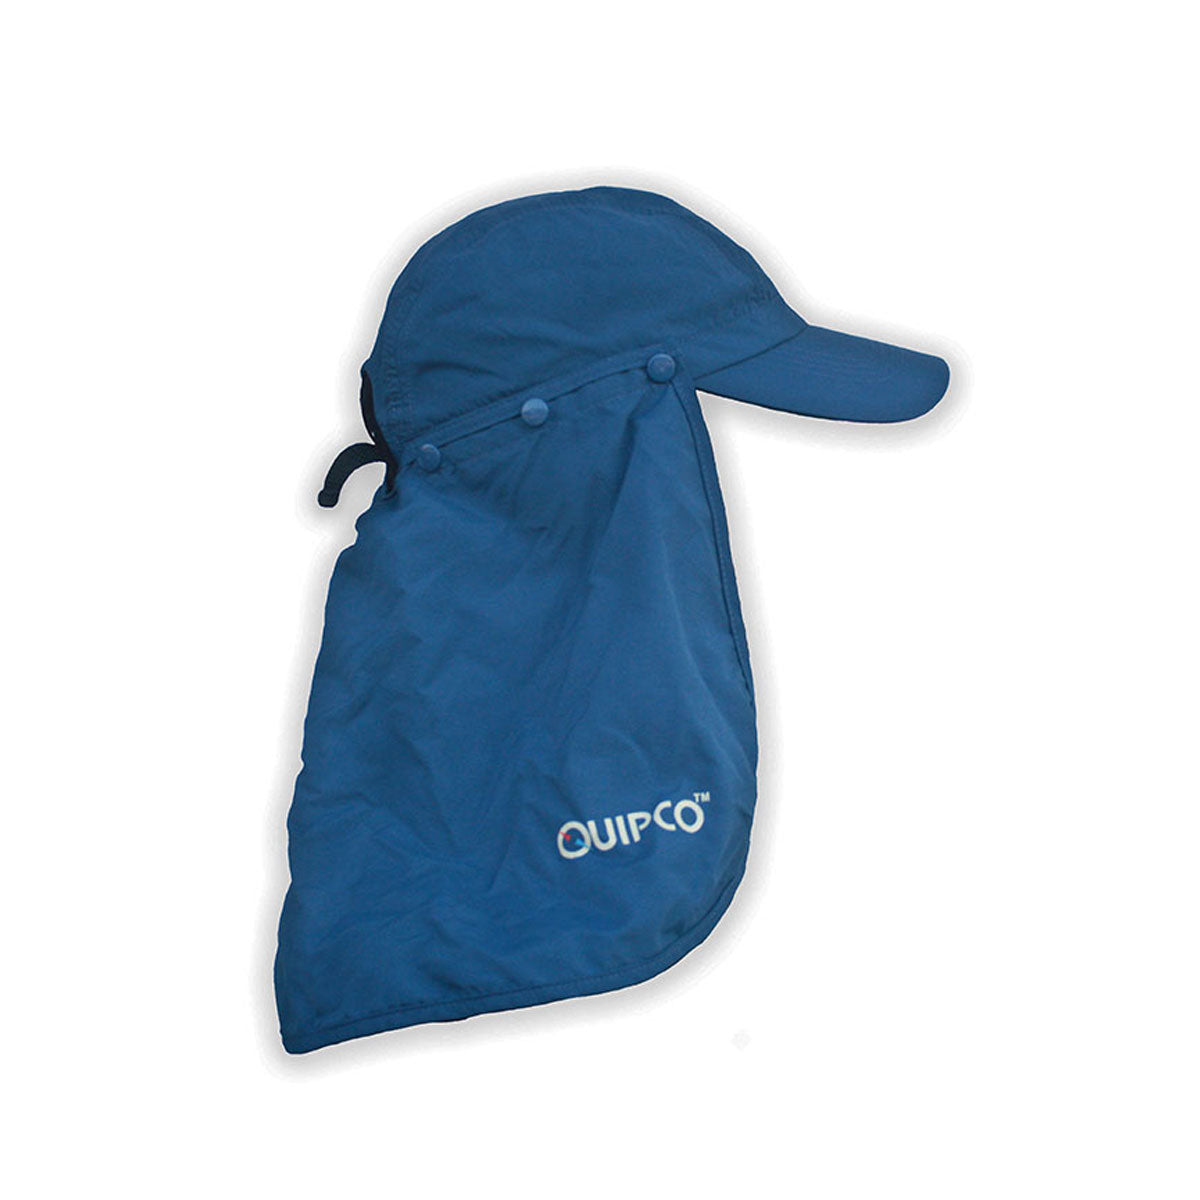 Quipco Explorer Anti UV Cap - Outdoor Travel Gear 1